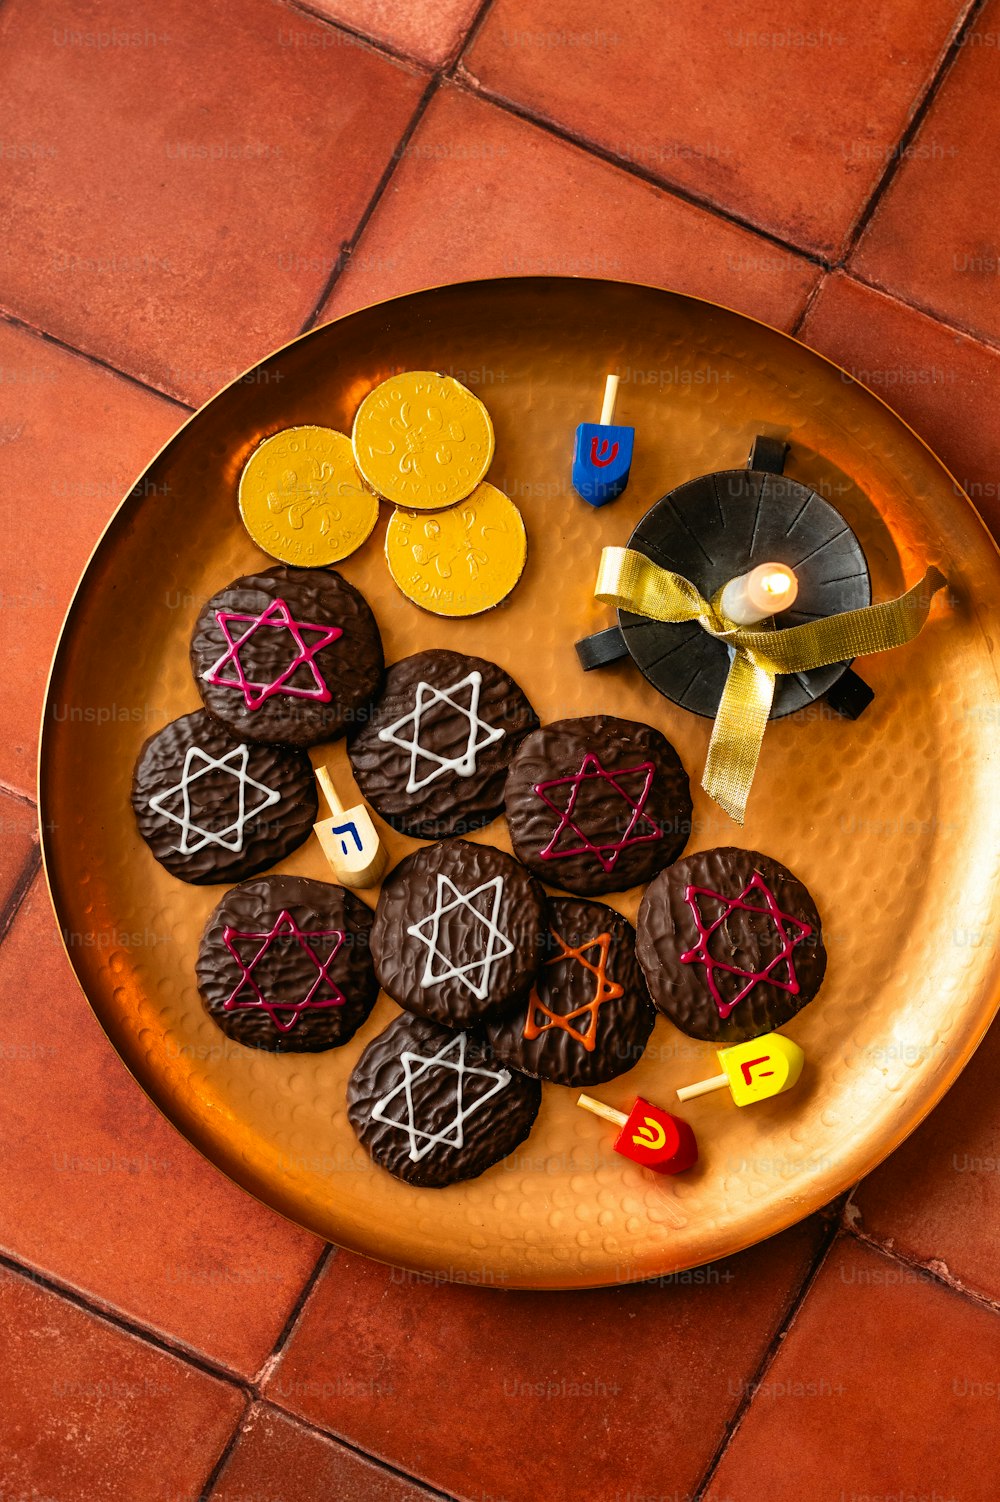 une assiette de biscuits décorée de lettres et de chiffres